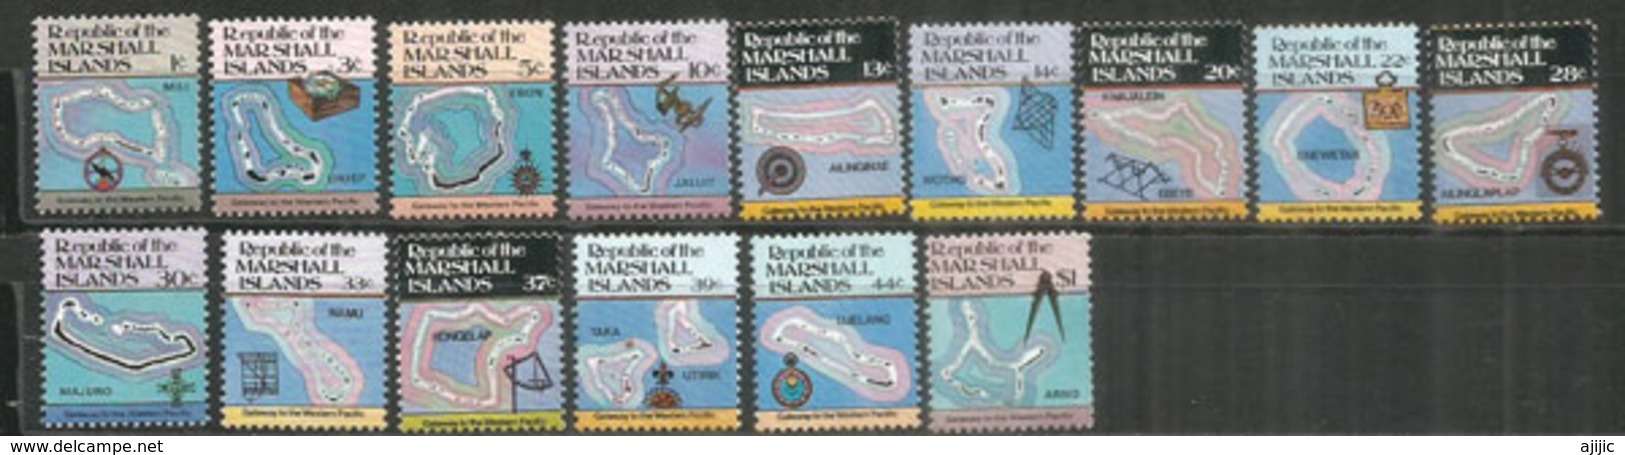 ILES MARSHALL. L'atoll Kwajalein, Le Plus Grand Du Monde, Et Les Autres Atolls Des îles Marshall.15 Timbres Neufs ** - Iles